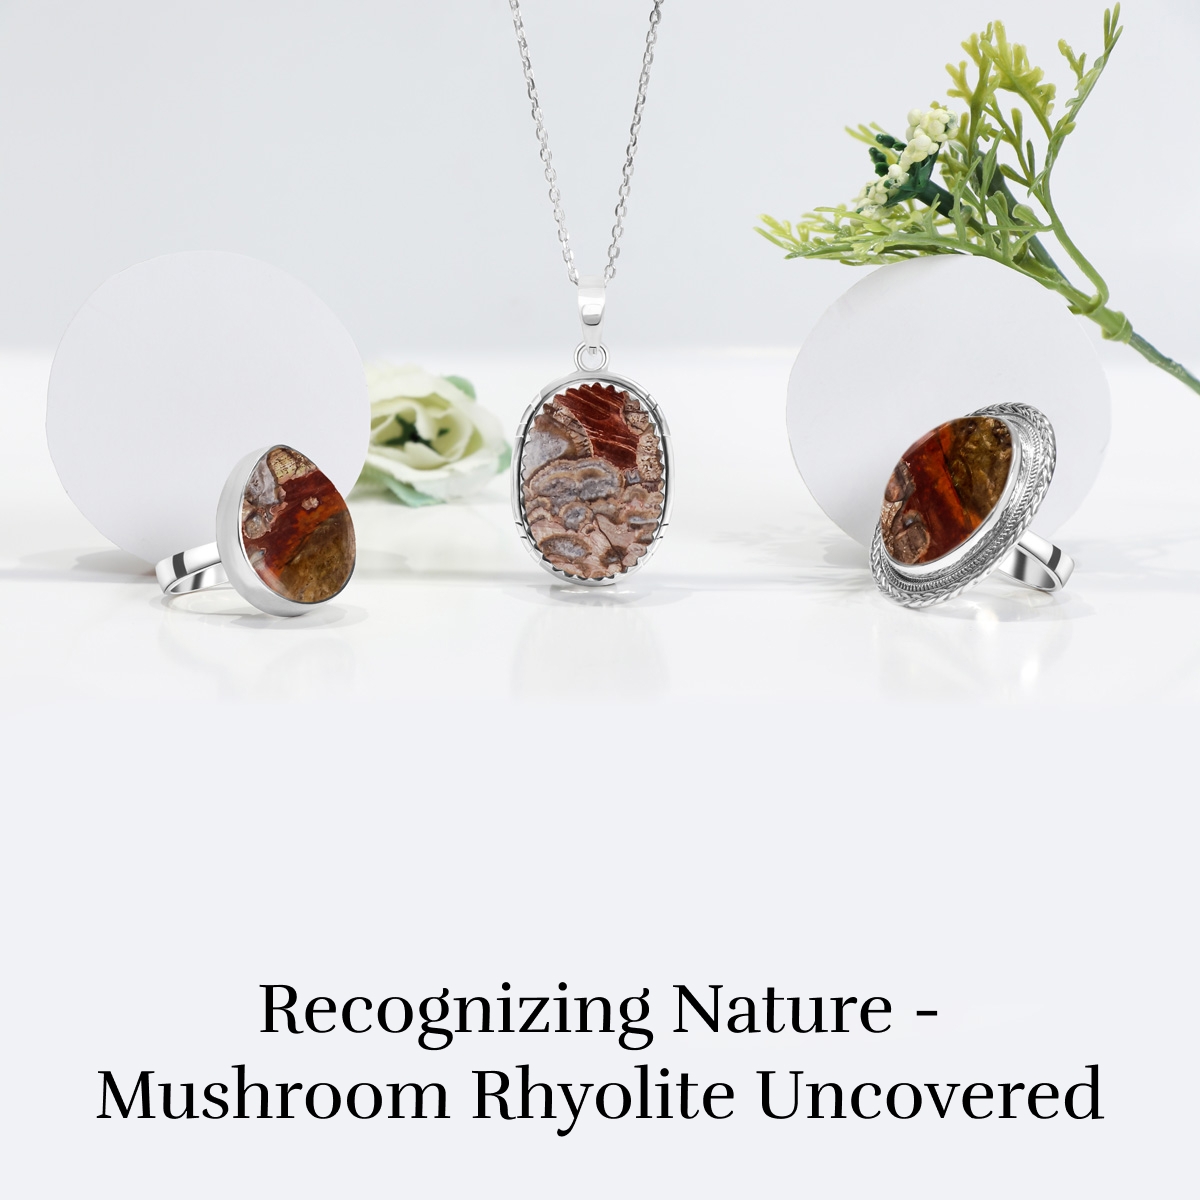 How Can I Identify Mushroom Rhyolite?